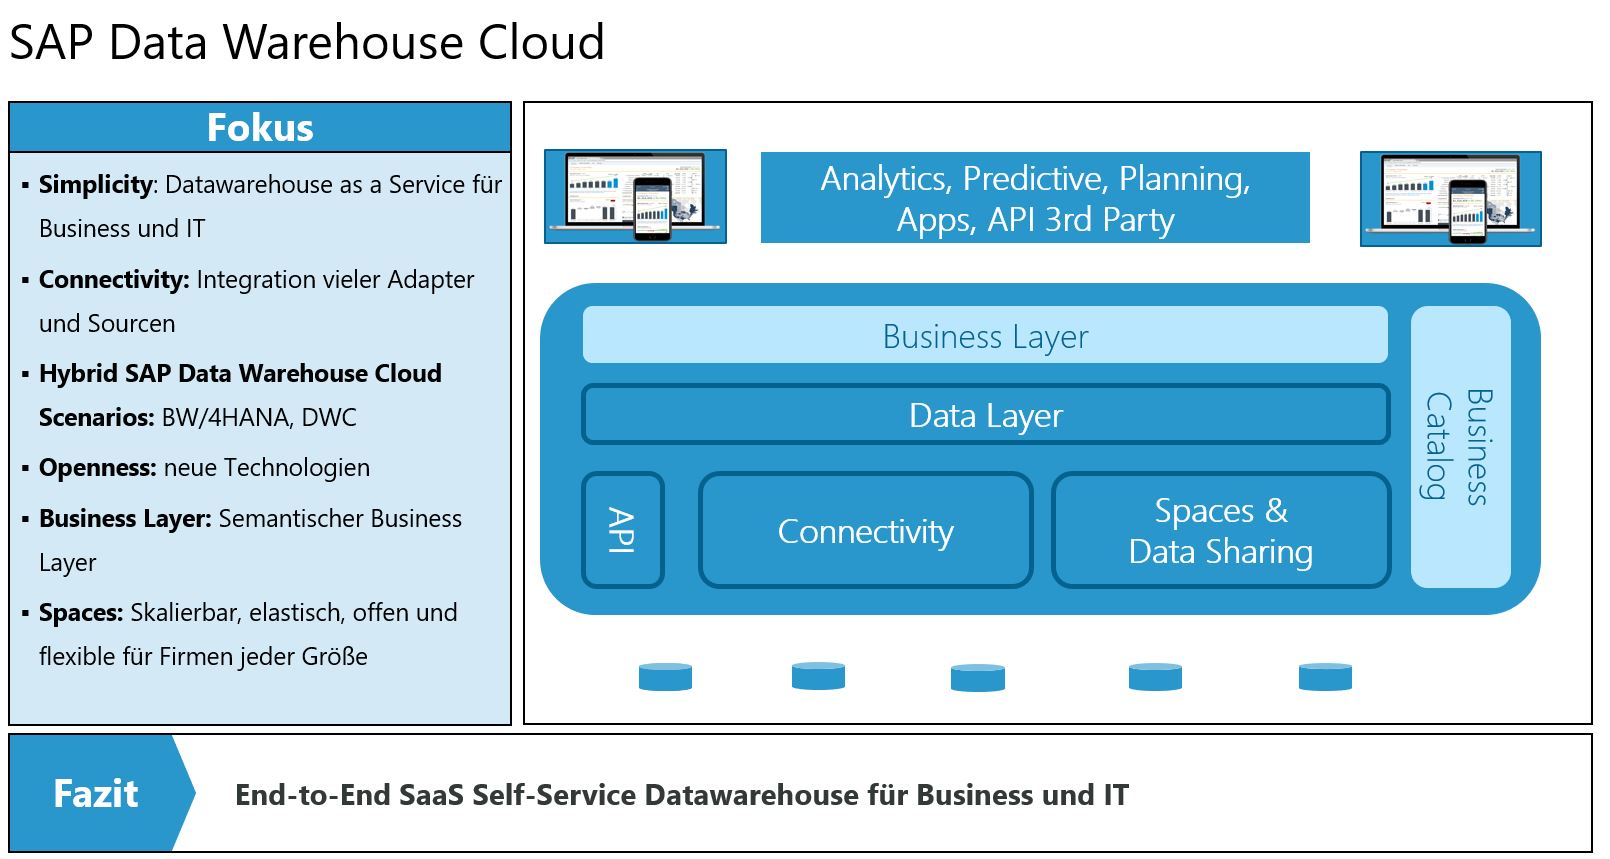 Darstellung des SAP Data Warehous